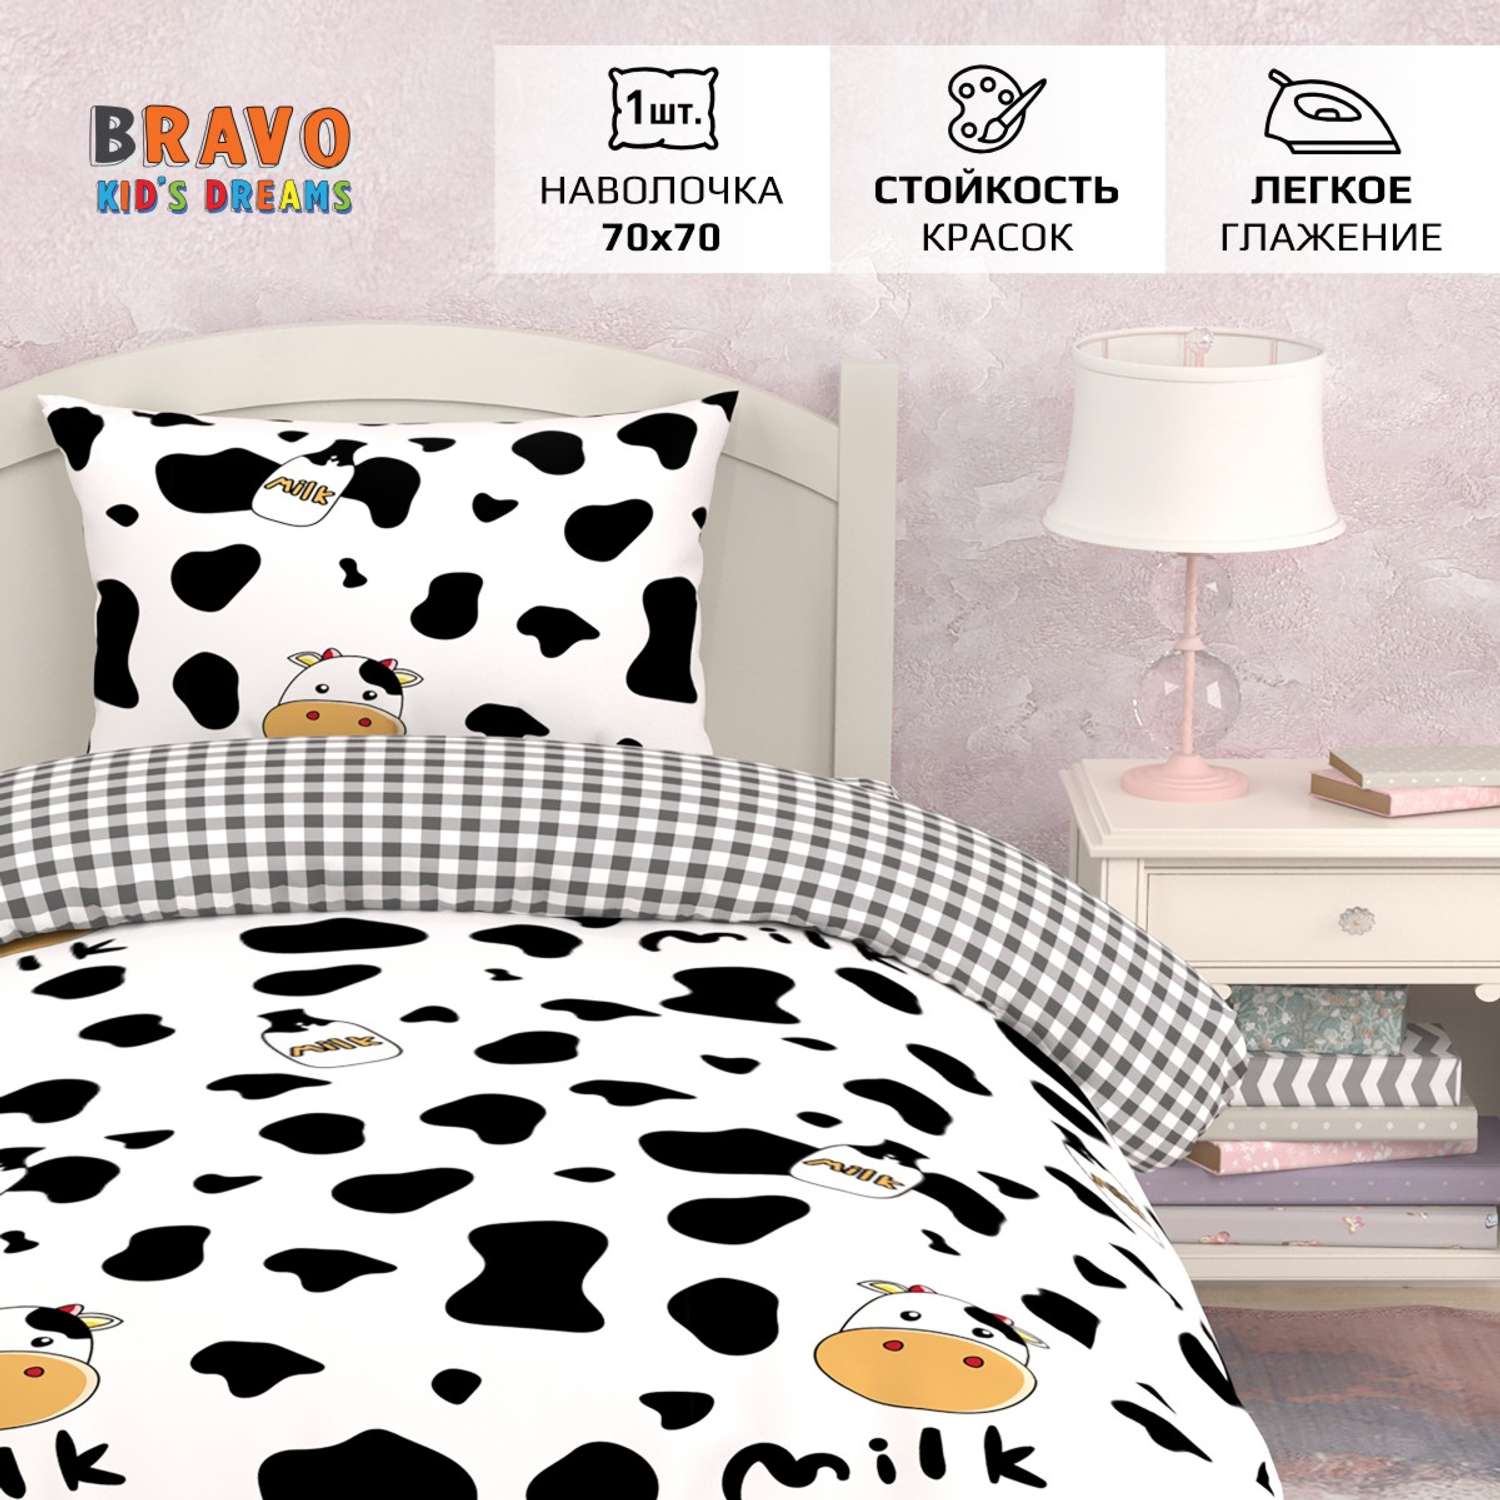 Комплект постельного белья BRAVO kids dreams Молоко 1.5 спальный простыня на резинке 90х200 - фото 2